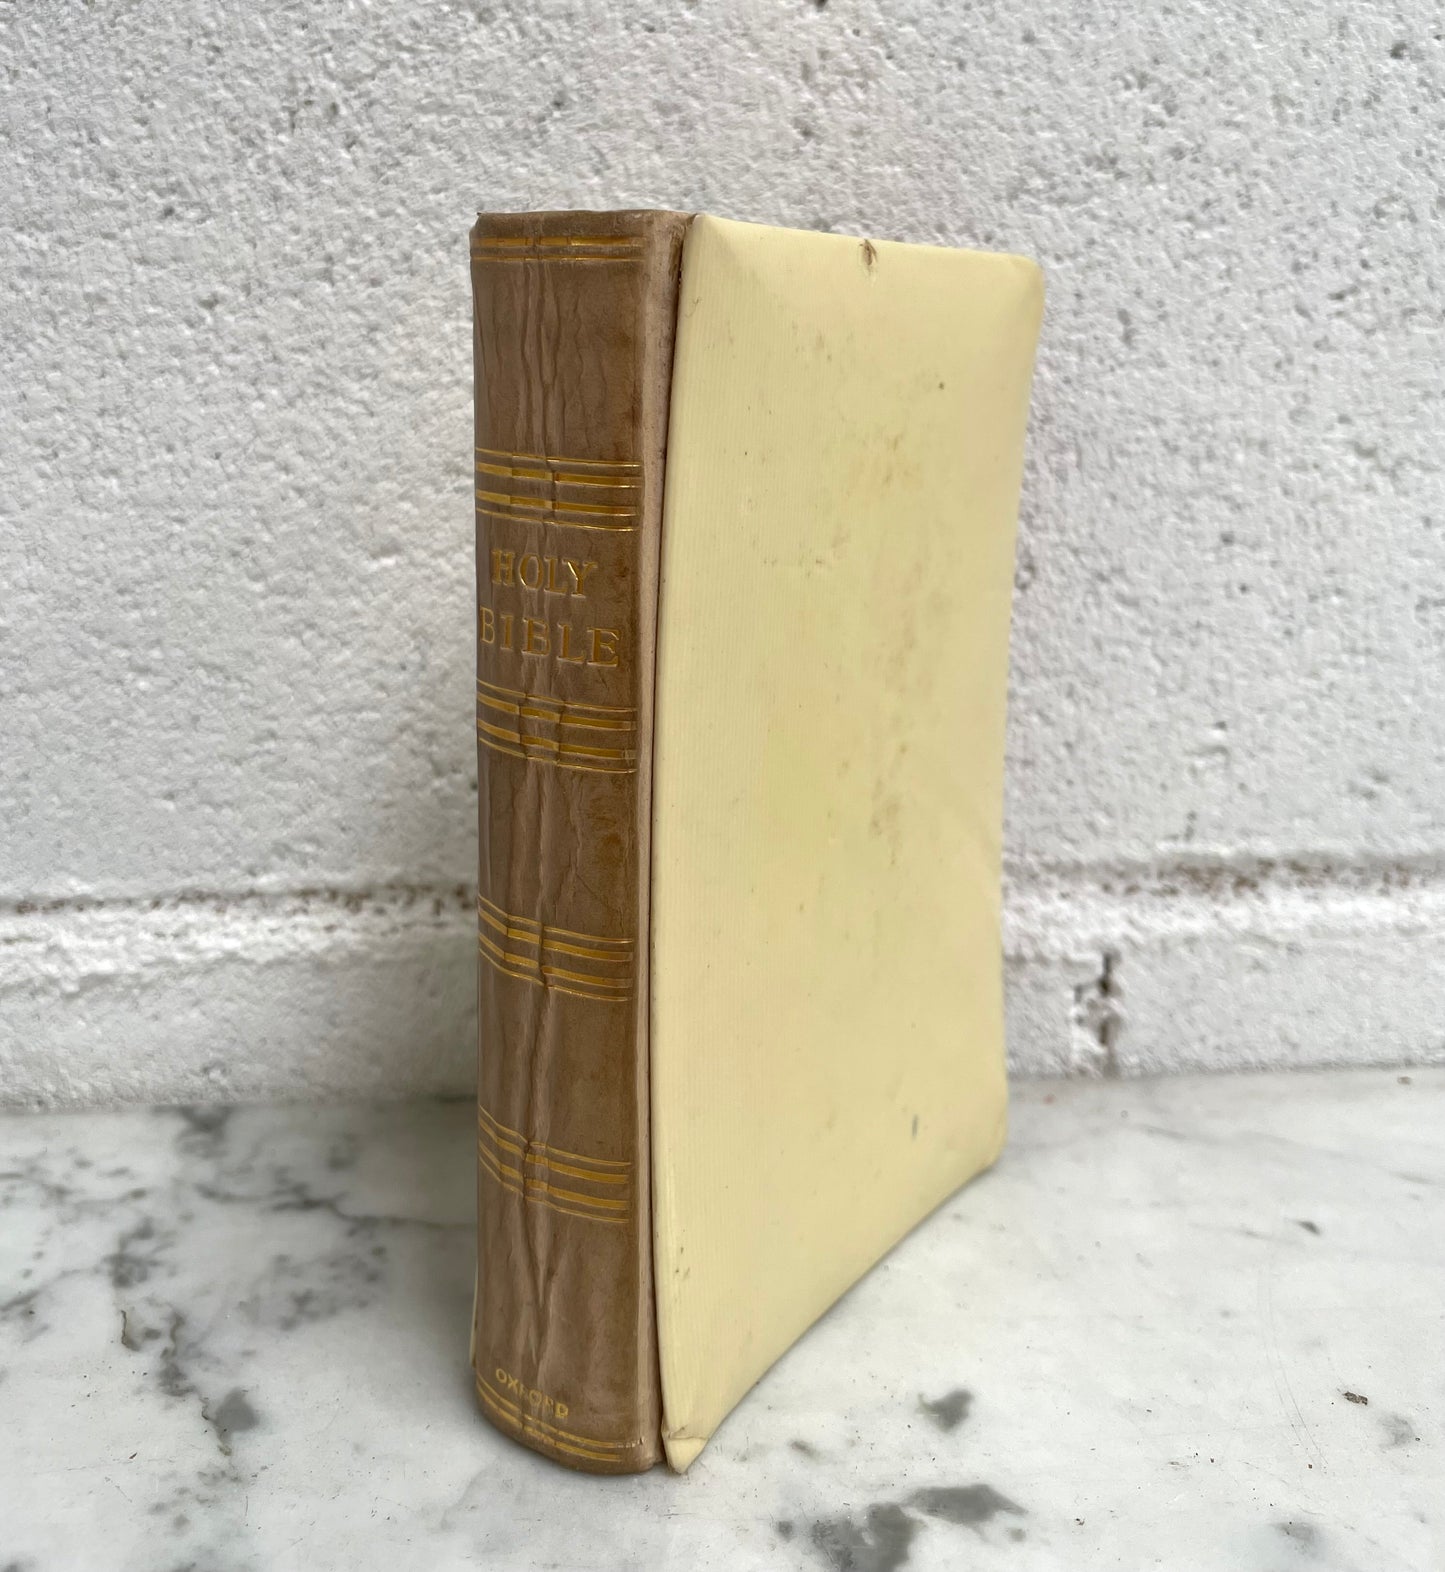 Oxford Bible in Box Circa: 1916